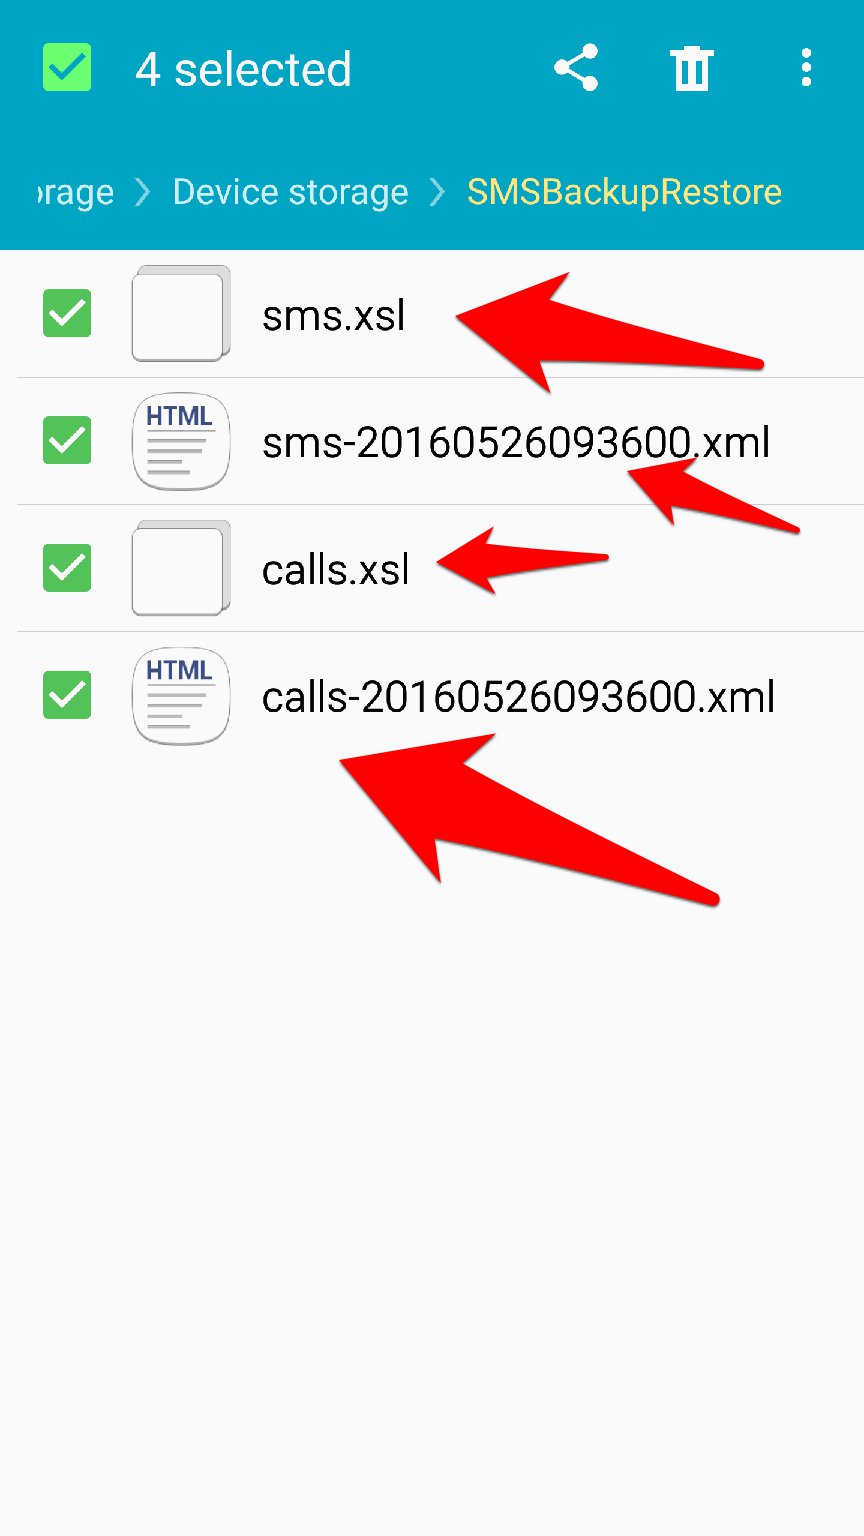 تطبيق SMS Backup & Restore لعمل نسخة احتياطية من الرسائل وسجل المكالمات | بحرية درويد